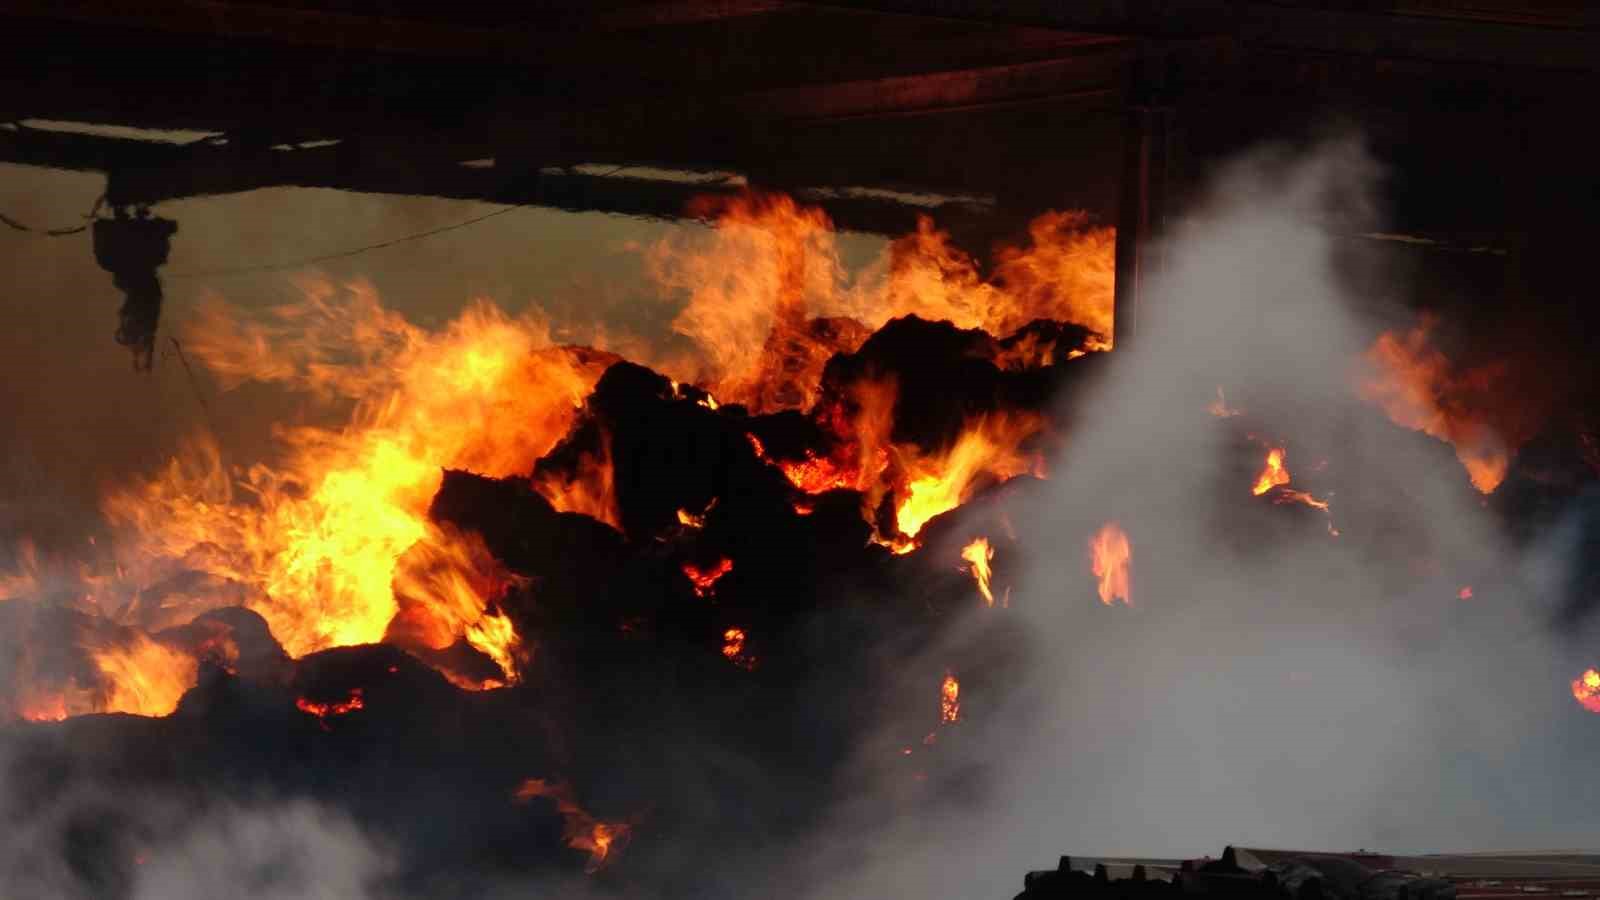 canakkalede dama yildirim dusmesi sonucu 2 bin balya saman yandi 29 buyukbas hayvan yanmaktan LgTkcZqm